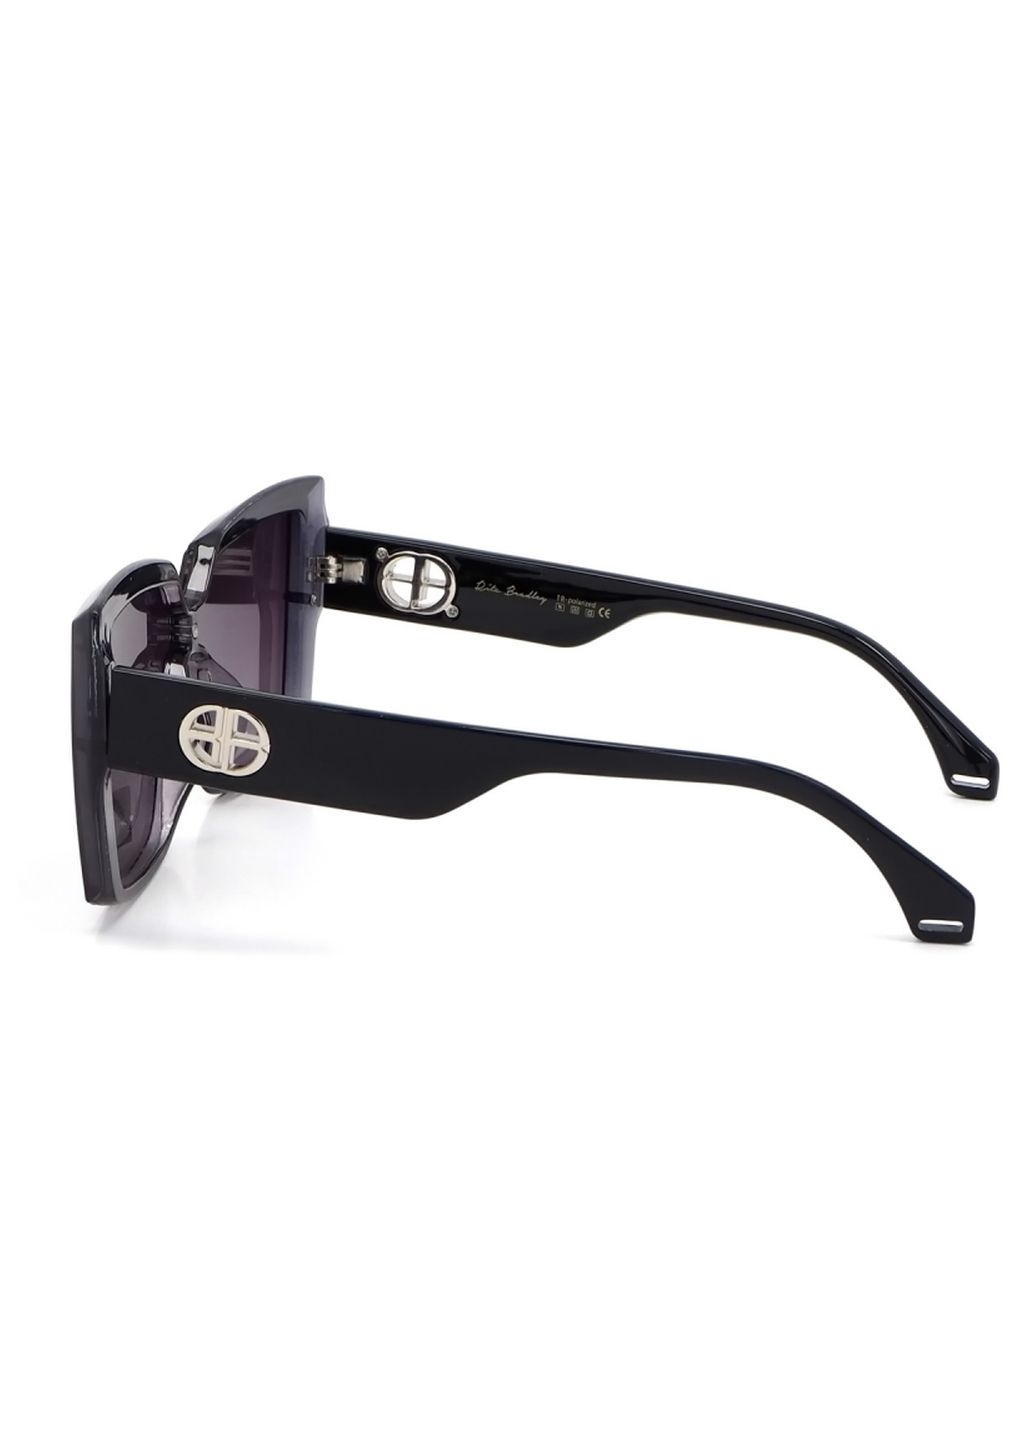 Купить Женские солнцезащитные очки Rita Bradley с поляризацией RB725 112048 в интернет-магазине